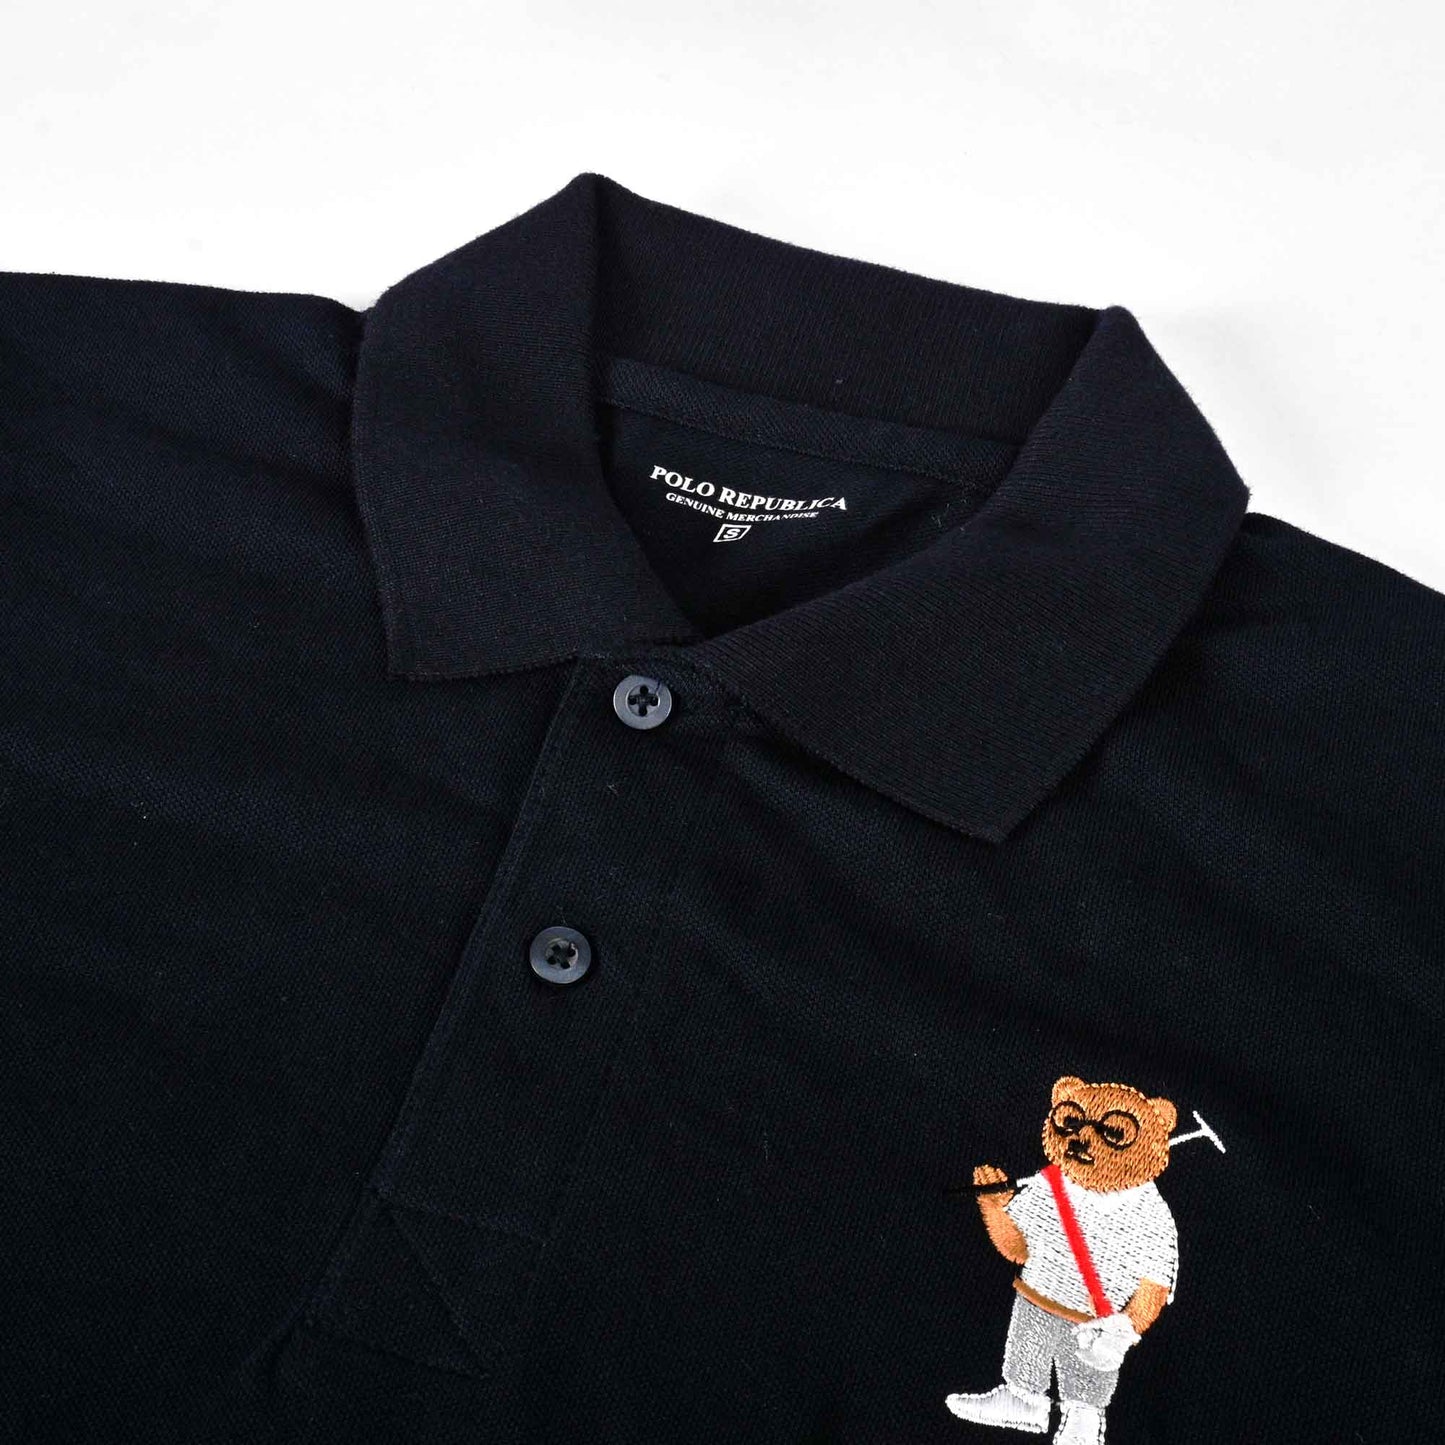 Polo Republica Men's Polo Bear Embroidered Short Sleeve Polo Shirt